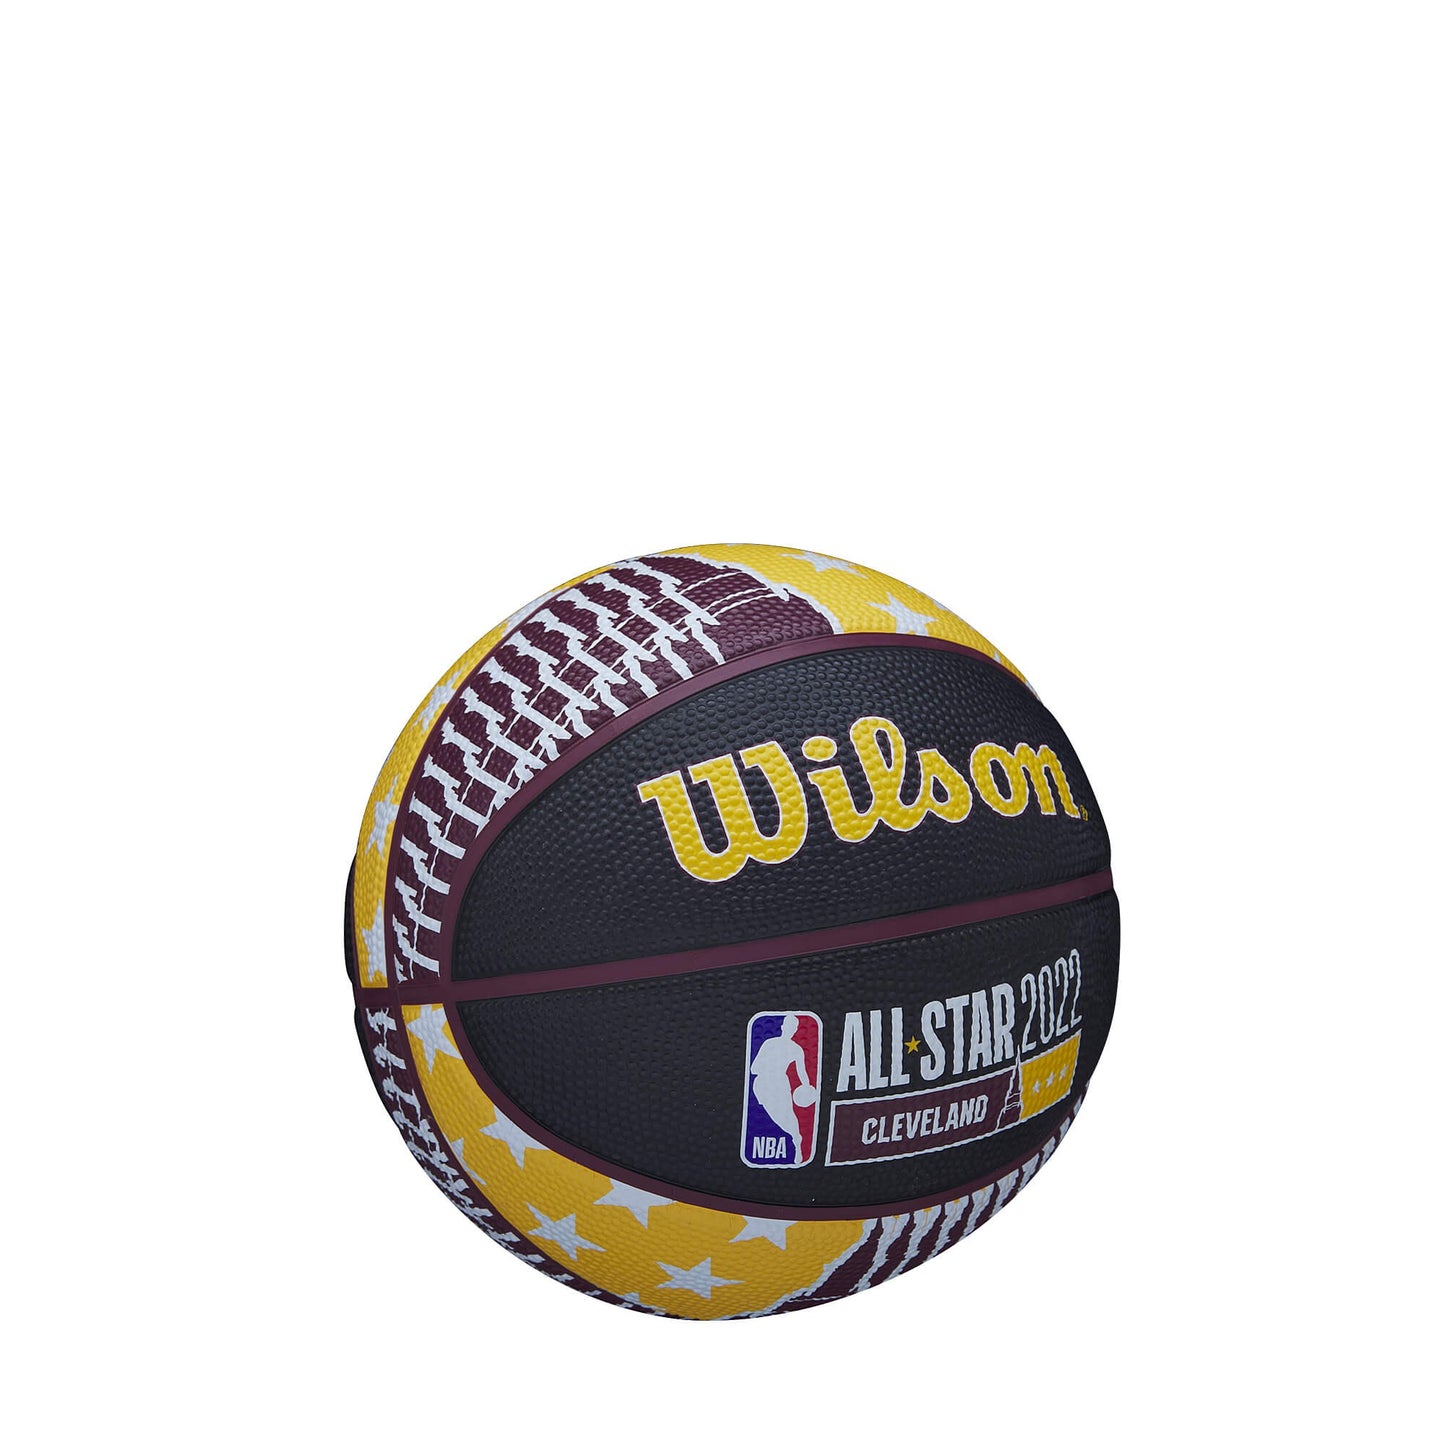 Wilson 2022 Nba All Star Mini (Sz. 3)